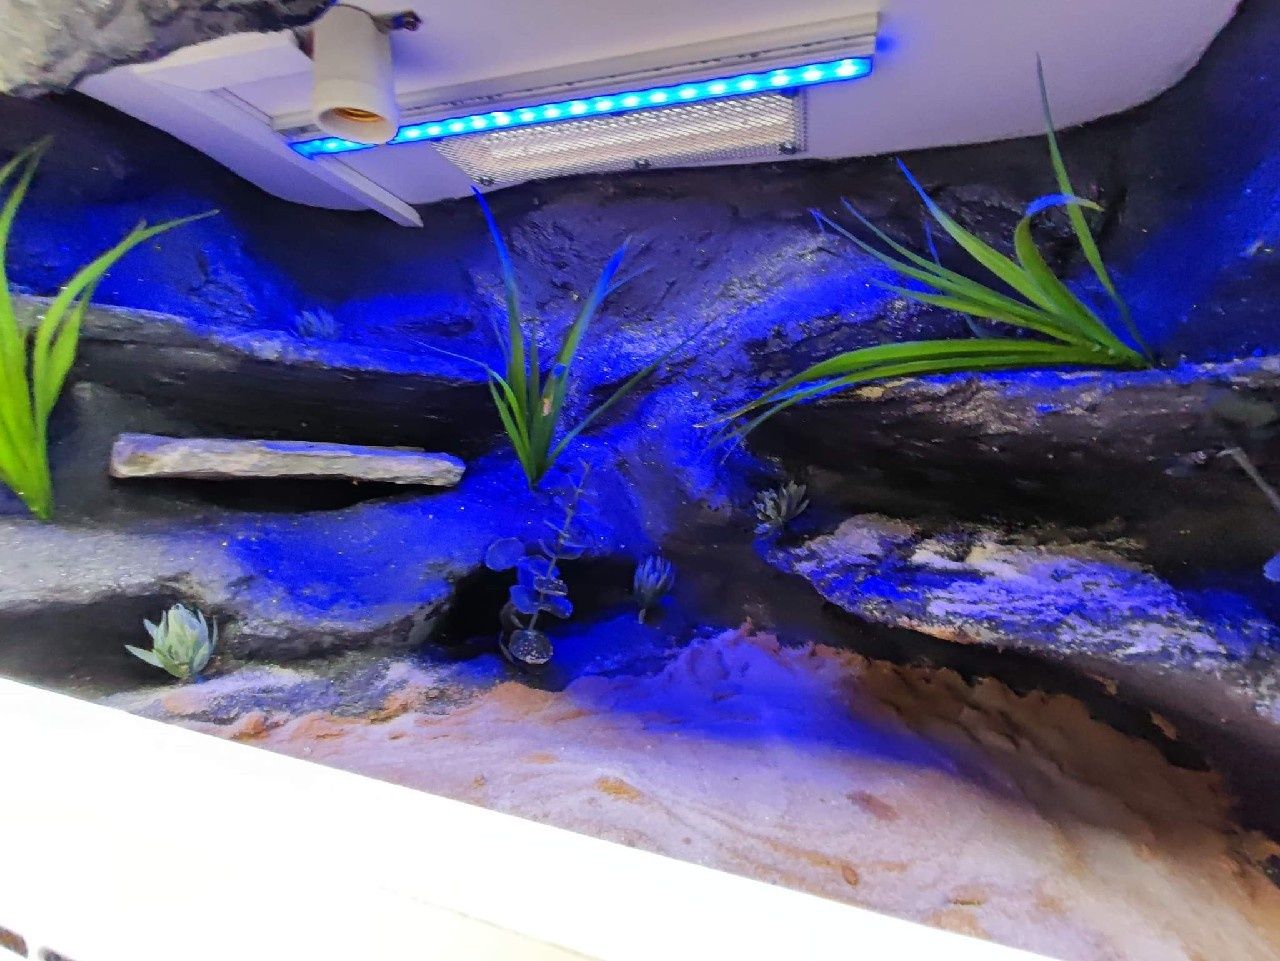 Terrarium z płyty meblowej gekon jaszczurka KOŚCIAN